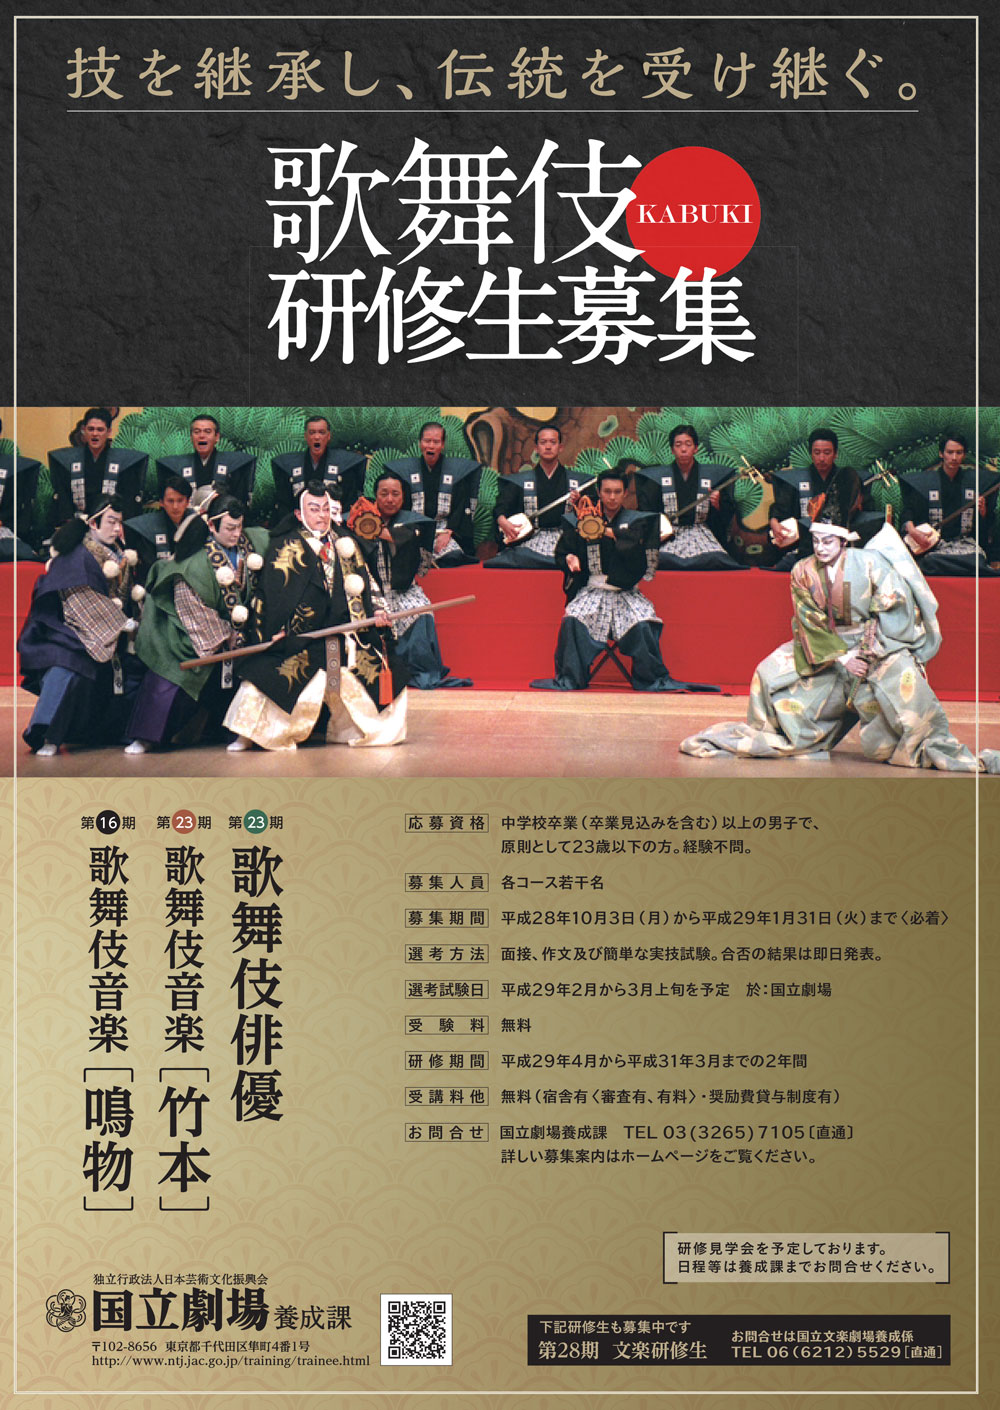 歌舞伎研修の最終見学会は14日開催